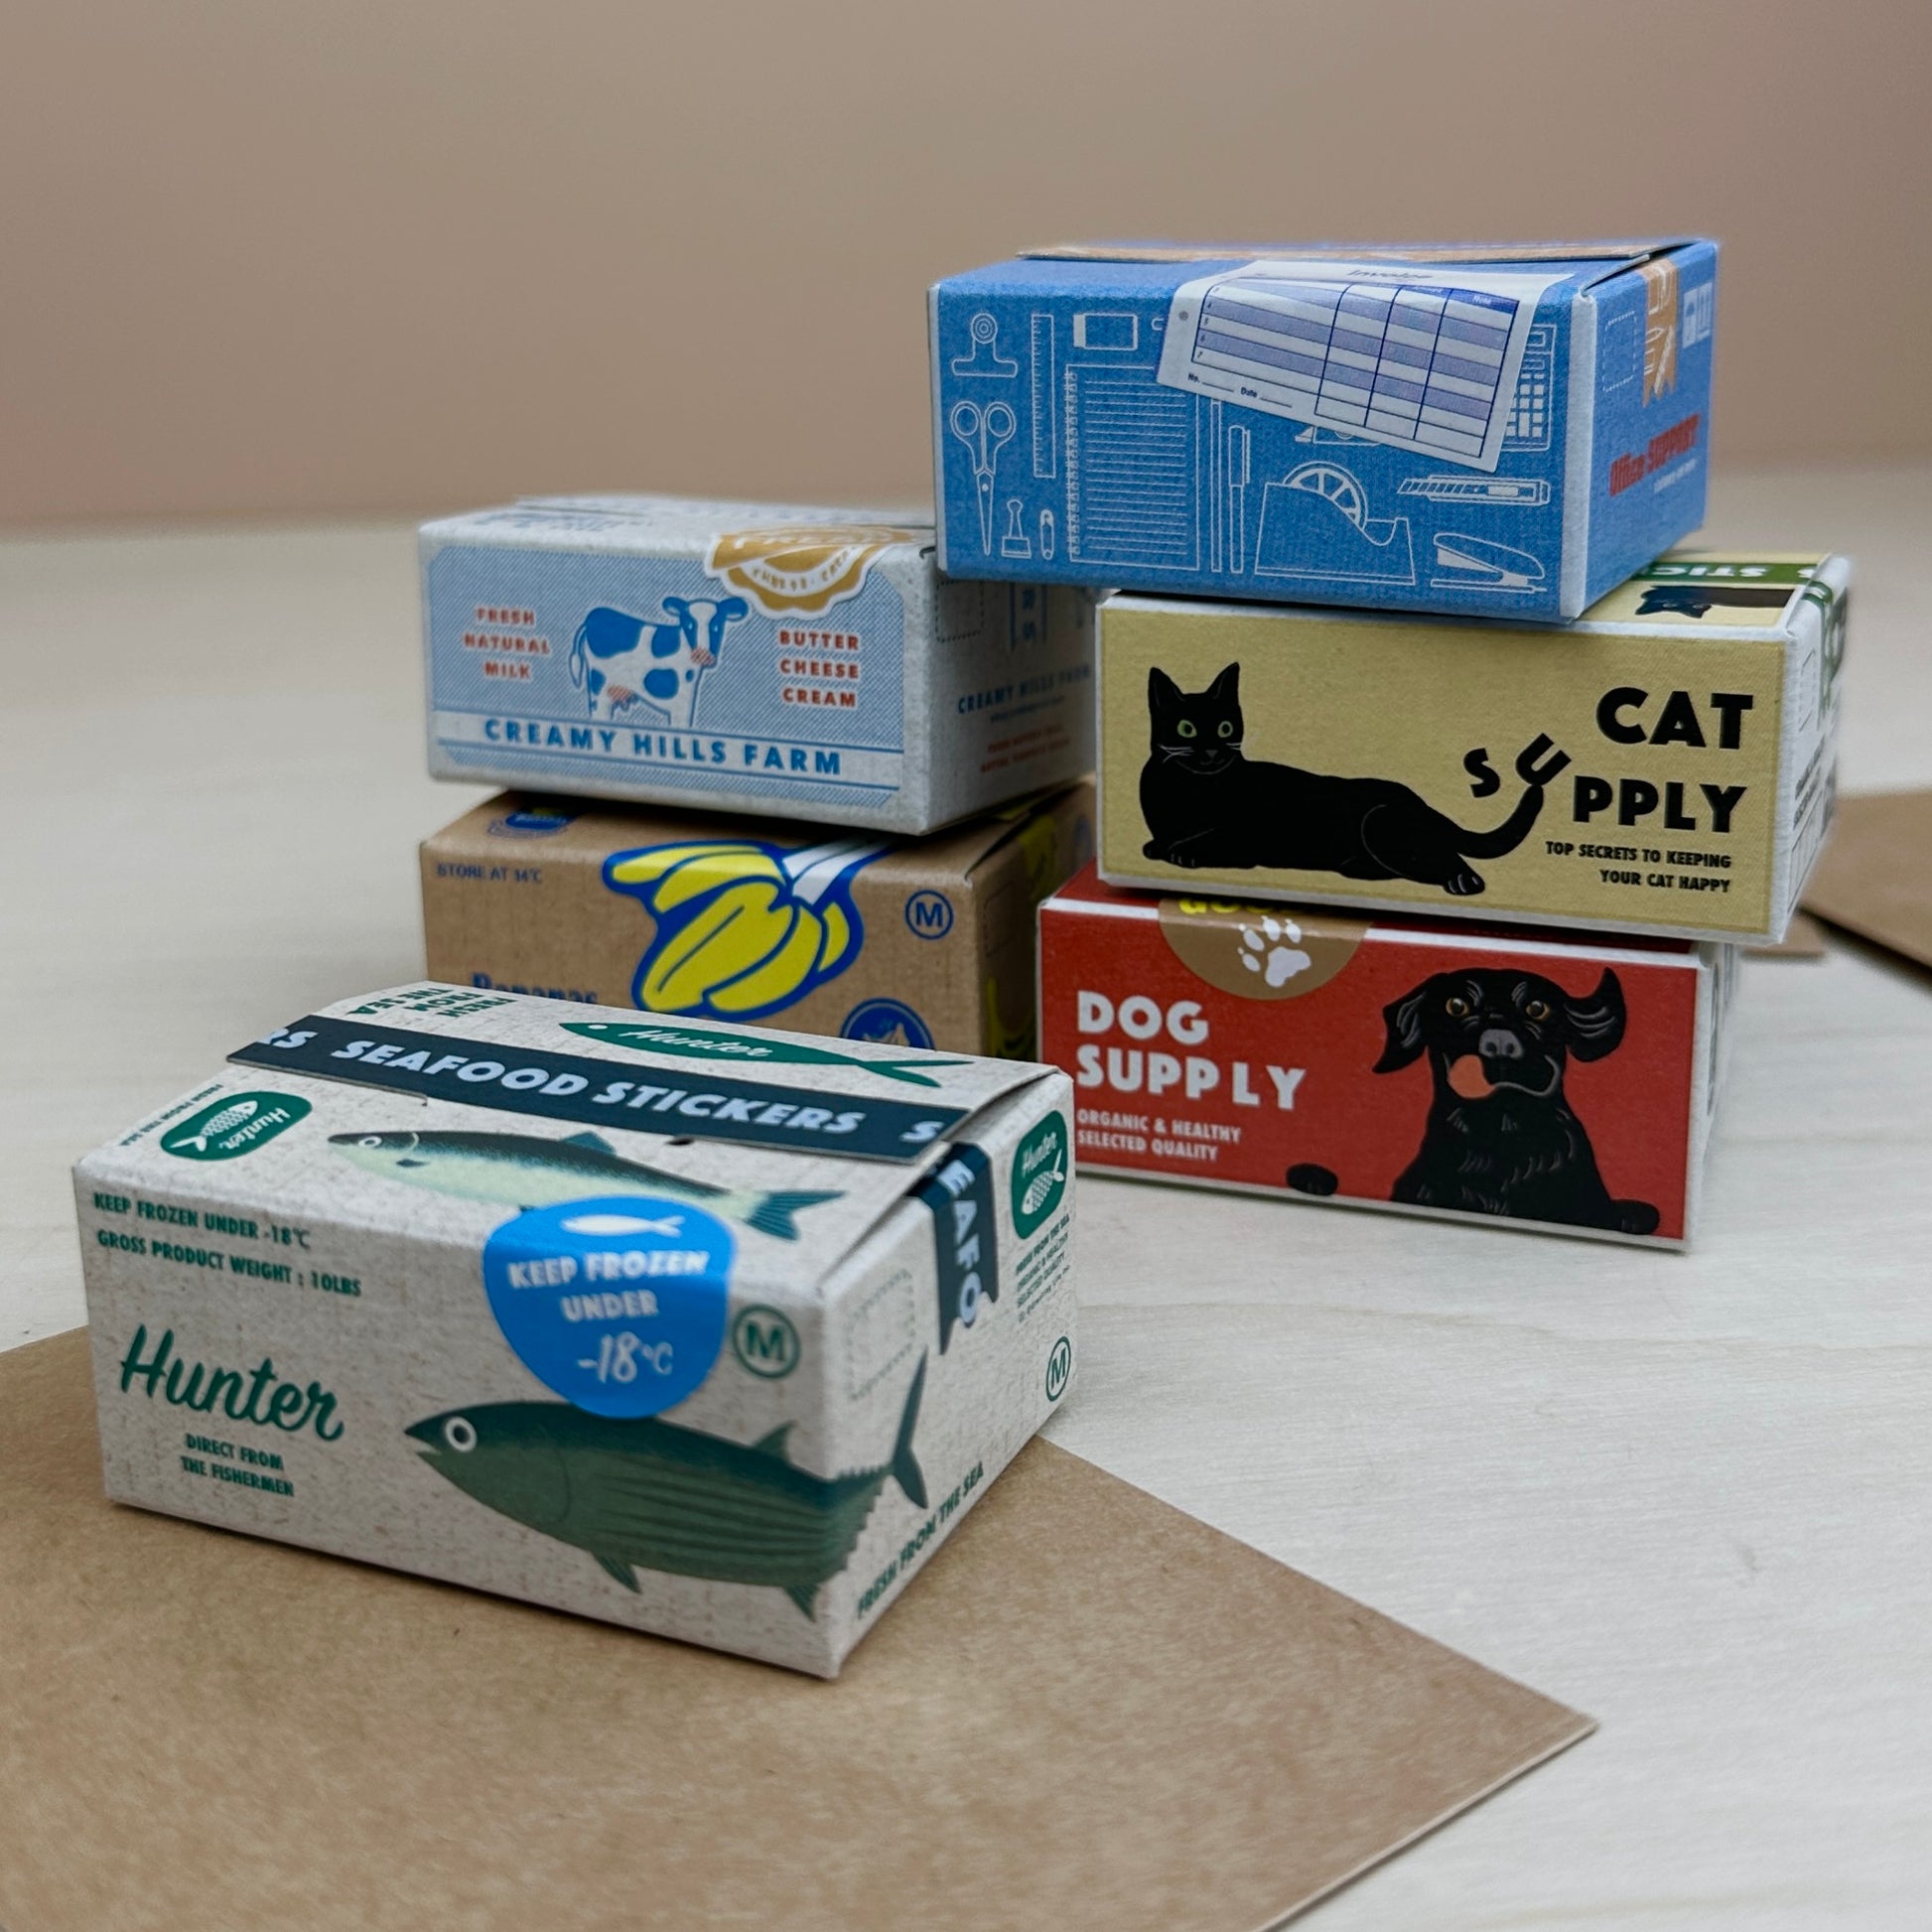 Miniature Shipping Box Flake Sticker Set - Fish